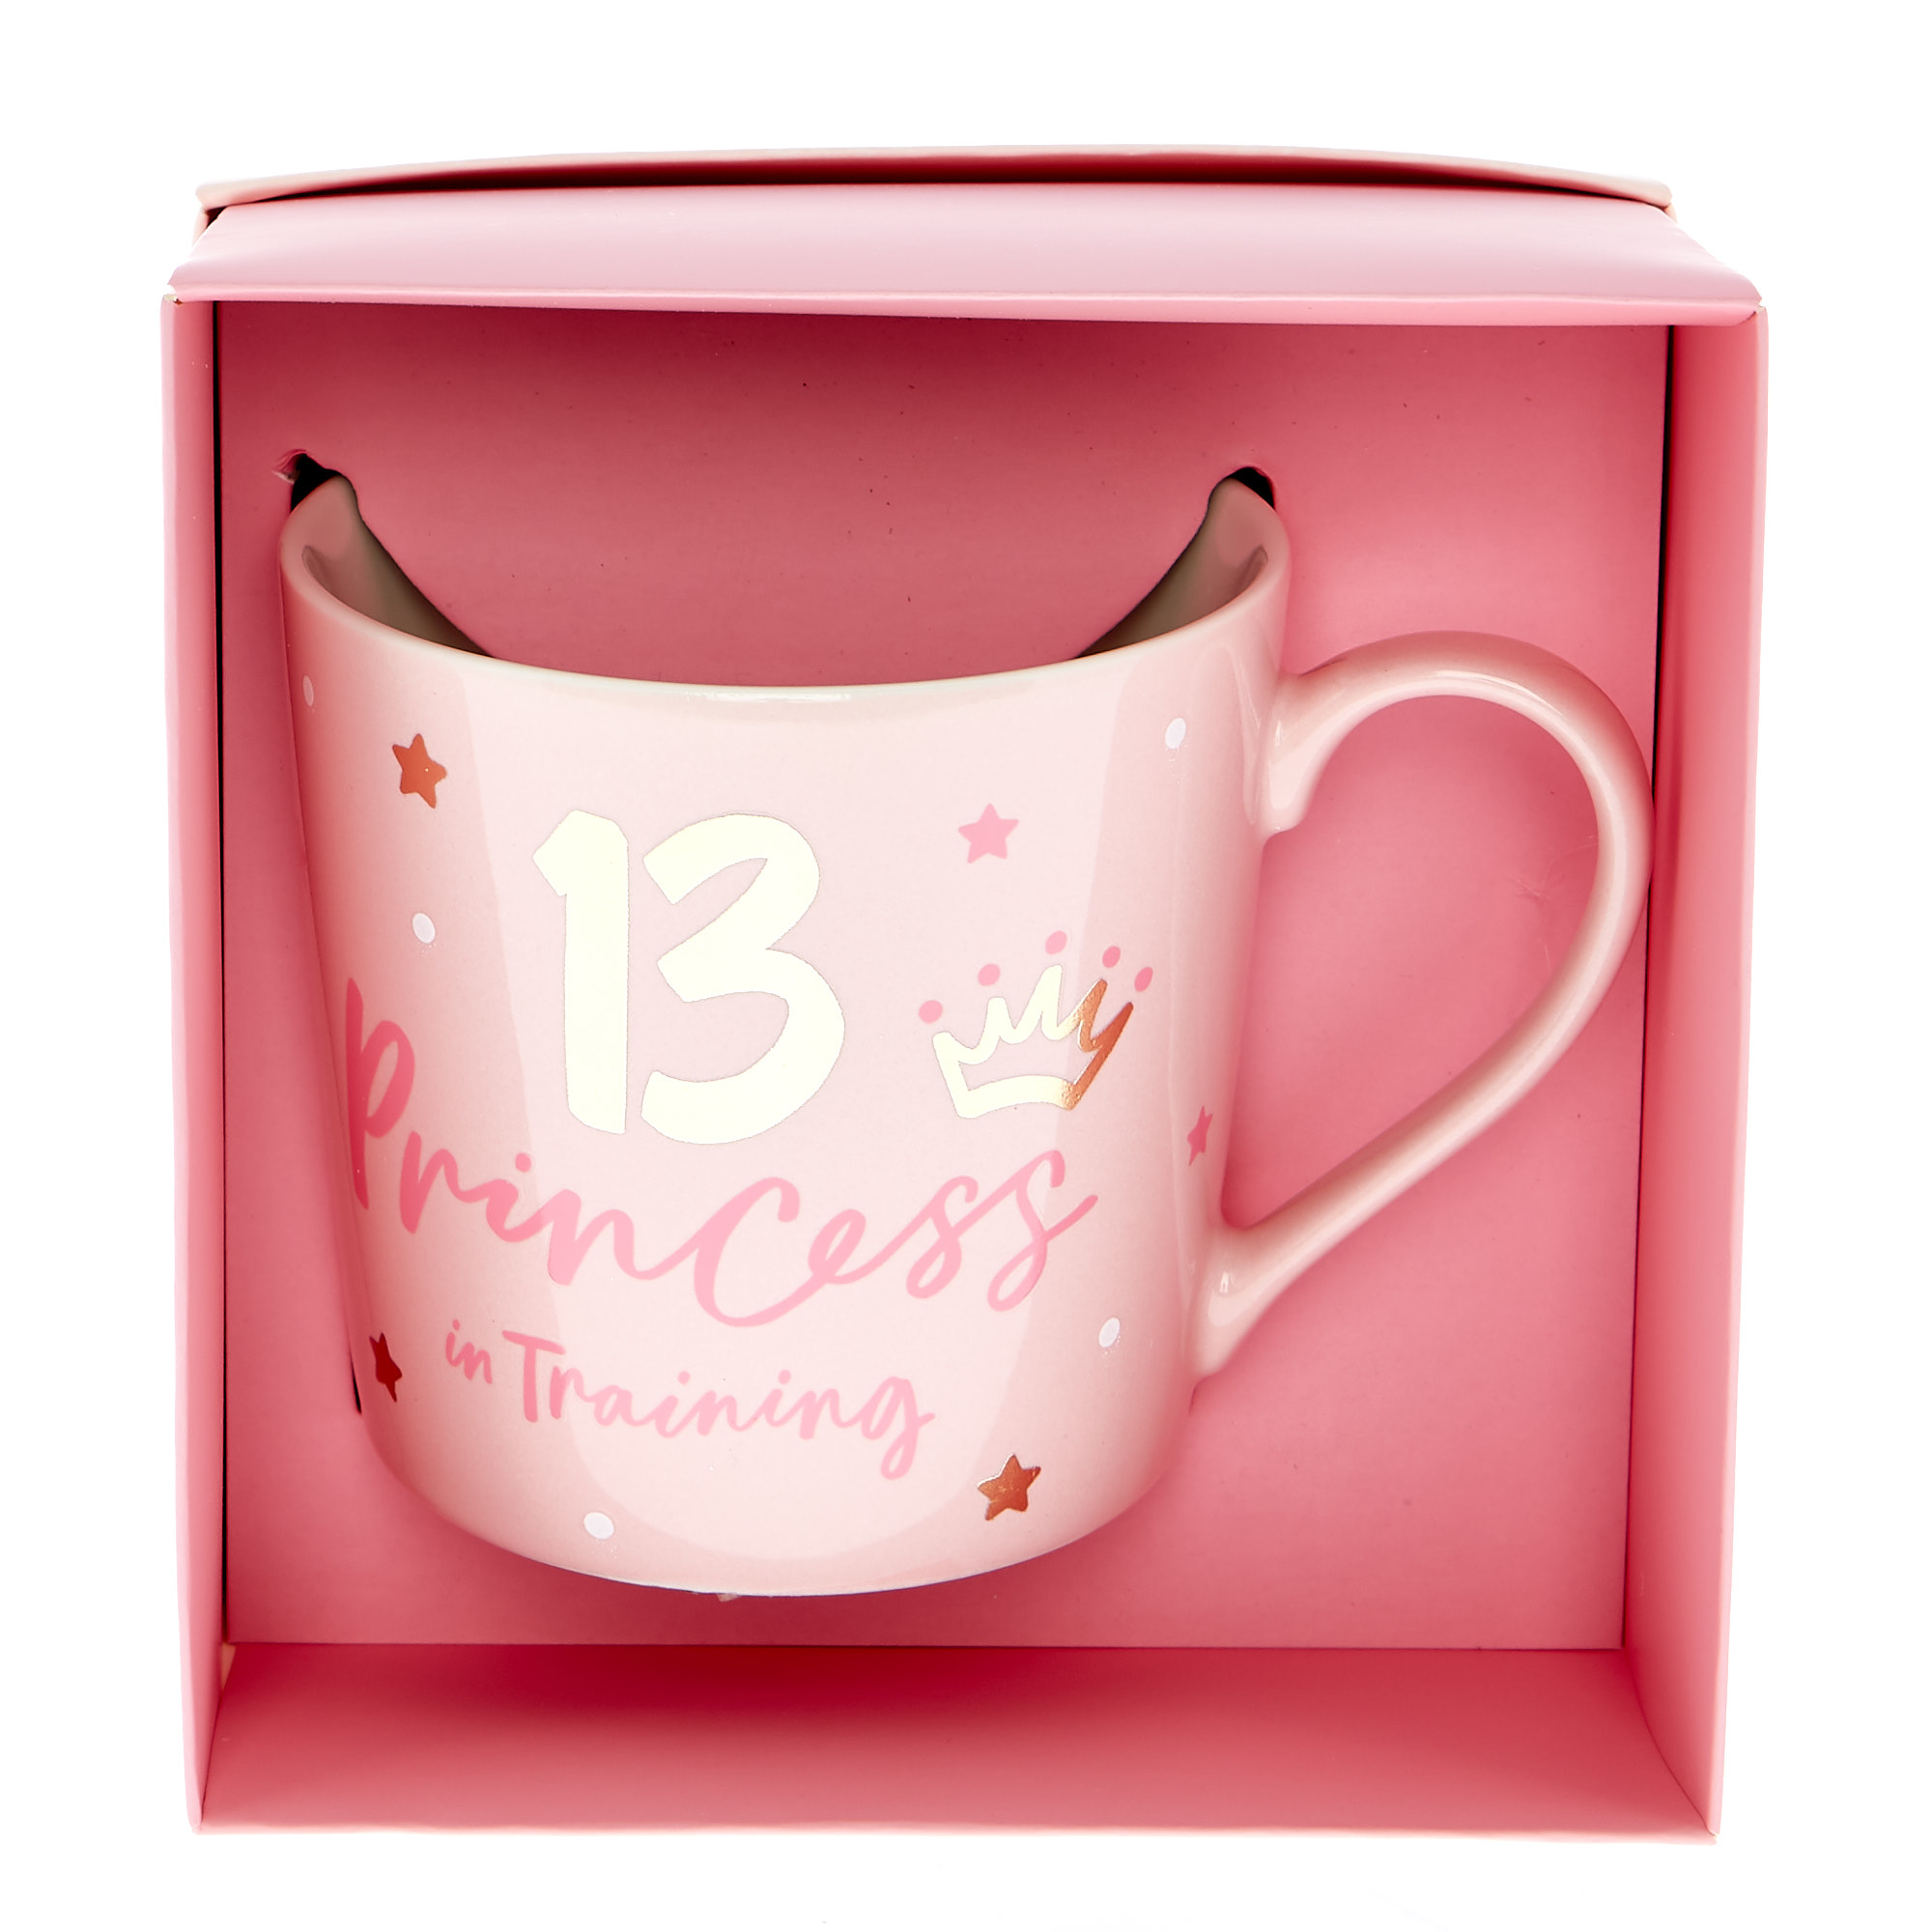 13th Birthday Mug In A Box - Princess In Training